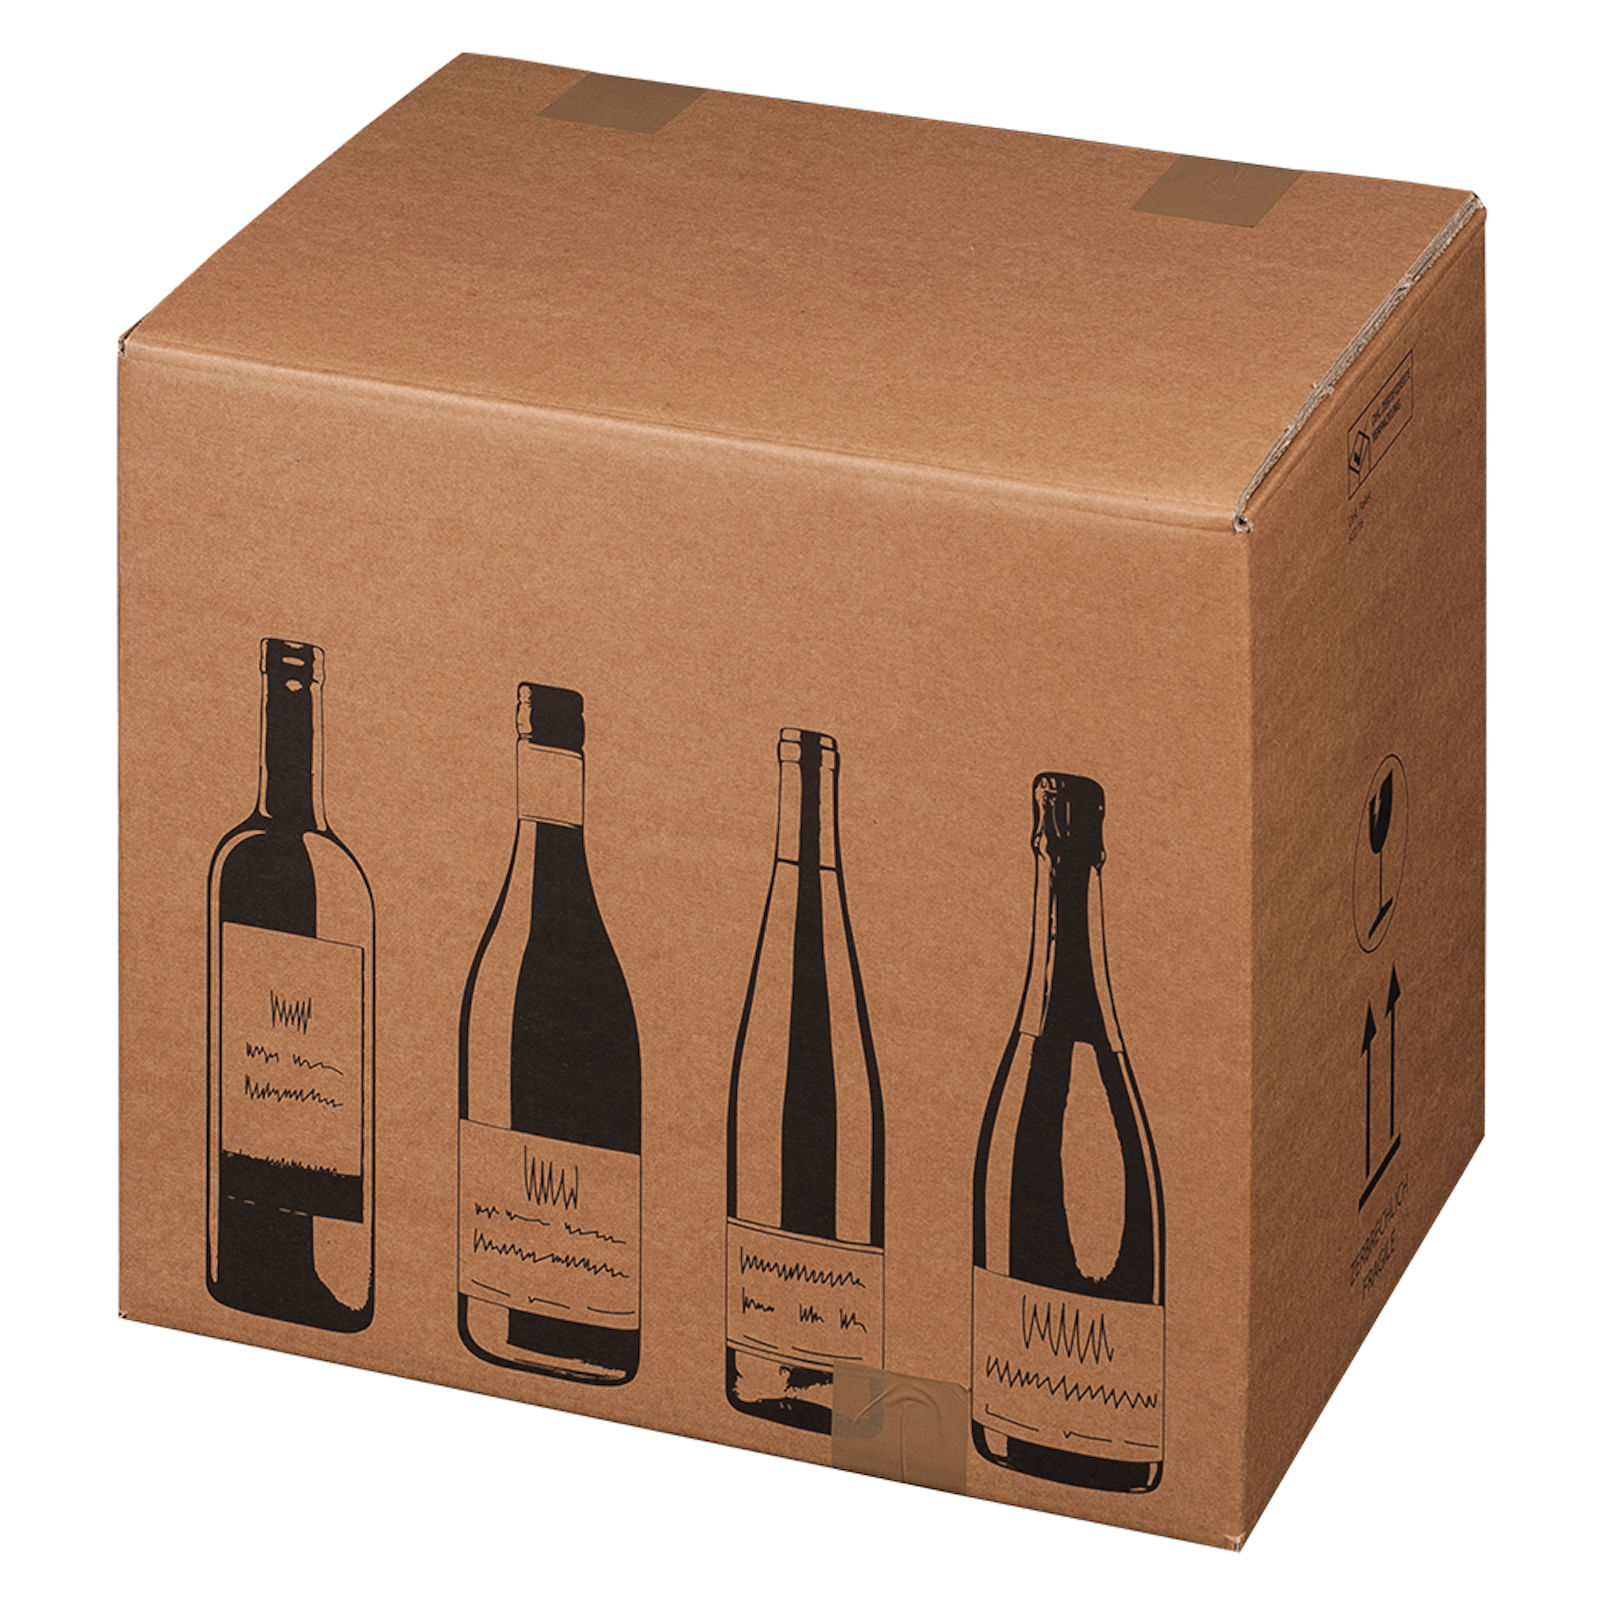 Weinversandkarton für 12 Flaschen Wein Karton Flaschen DHL UPS zertifiziert